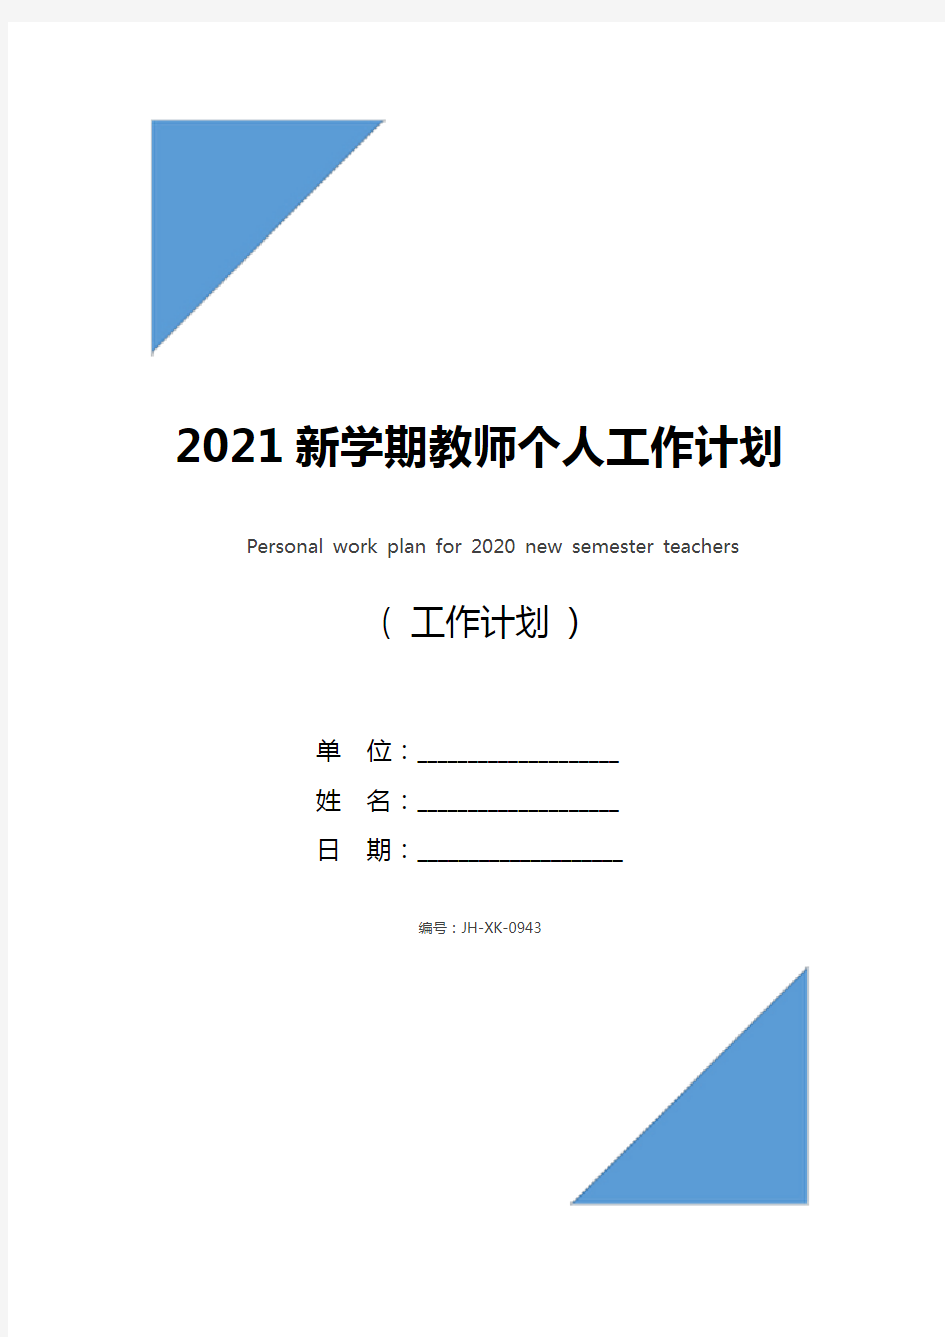 2021新学期教师个人工作计划(最新版)